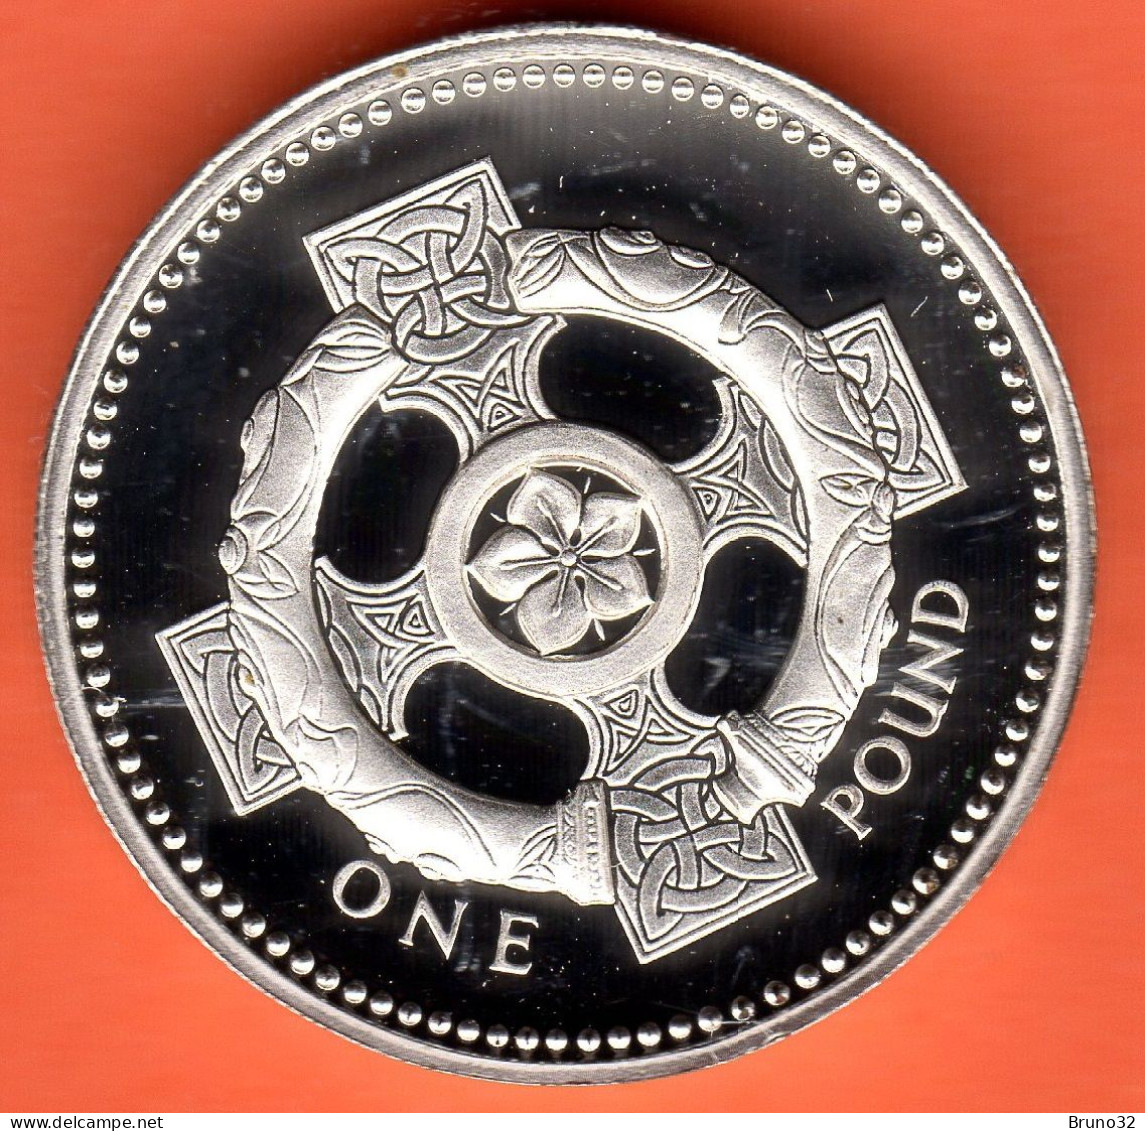 Gran Bretagna - GB - 1 ONE POUND - 1996 - Silver PROOF FDC/UNC - Come Da Foto (Senza Confezione) - 1 Pound